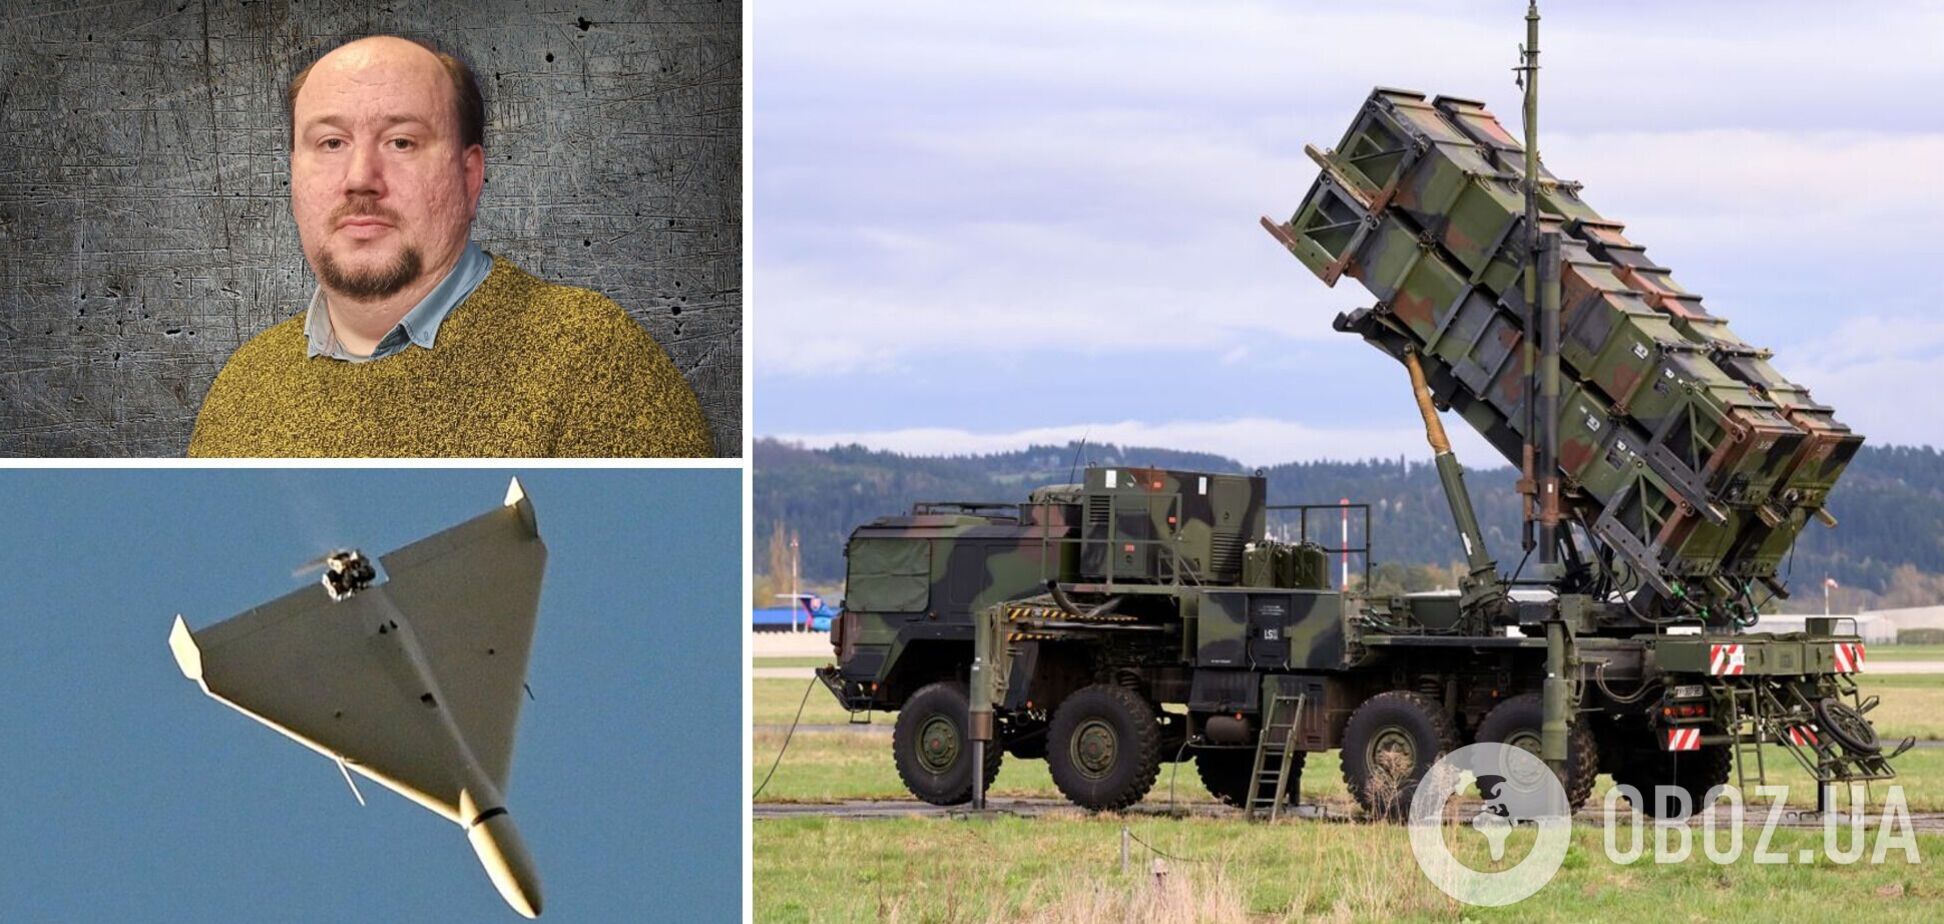 Украине дают Patriot. Способны ли они остановить ракетный террор? Интервью с военным экспертом Жироховым